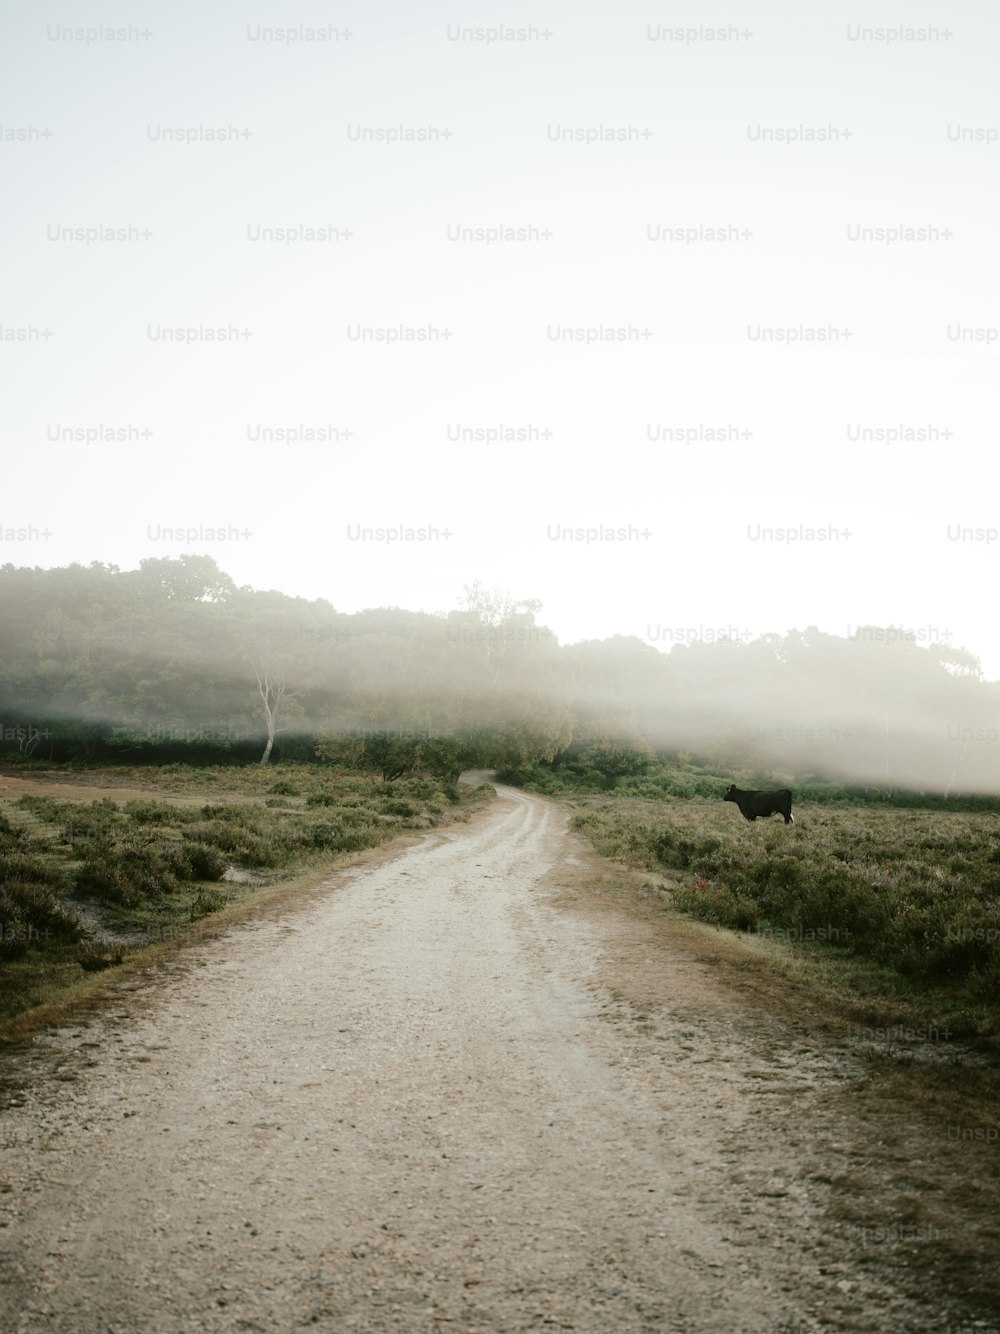 Une vache debout sur un chemin de terre au milieu d’un champ